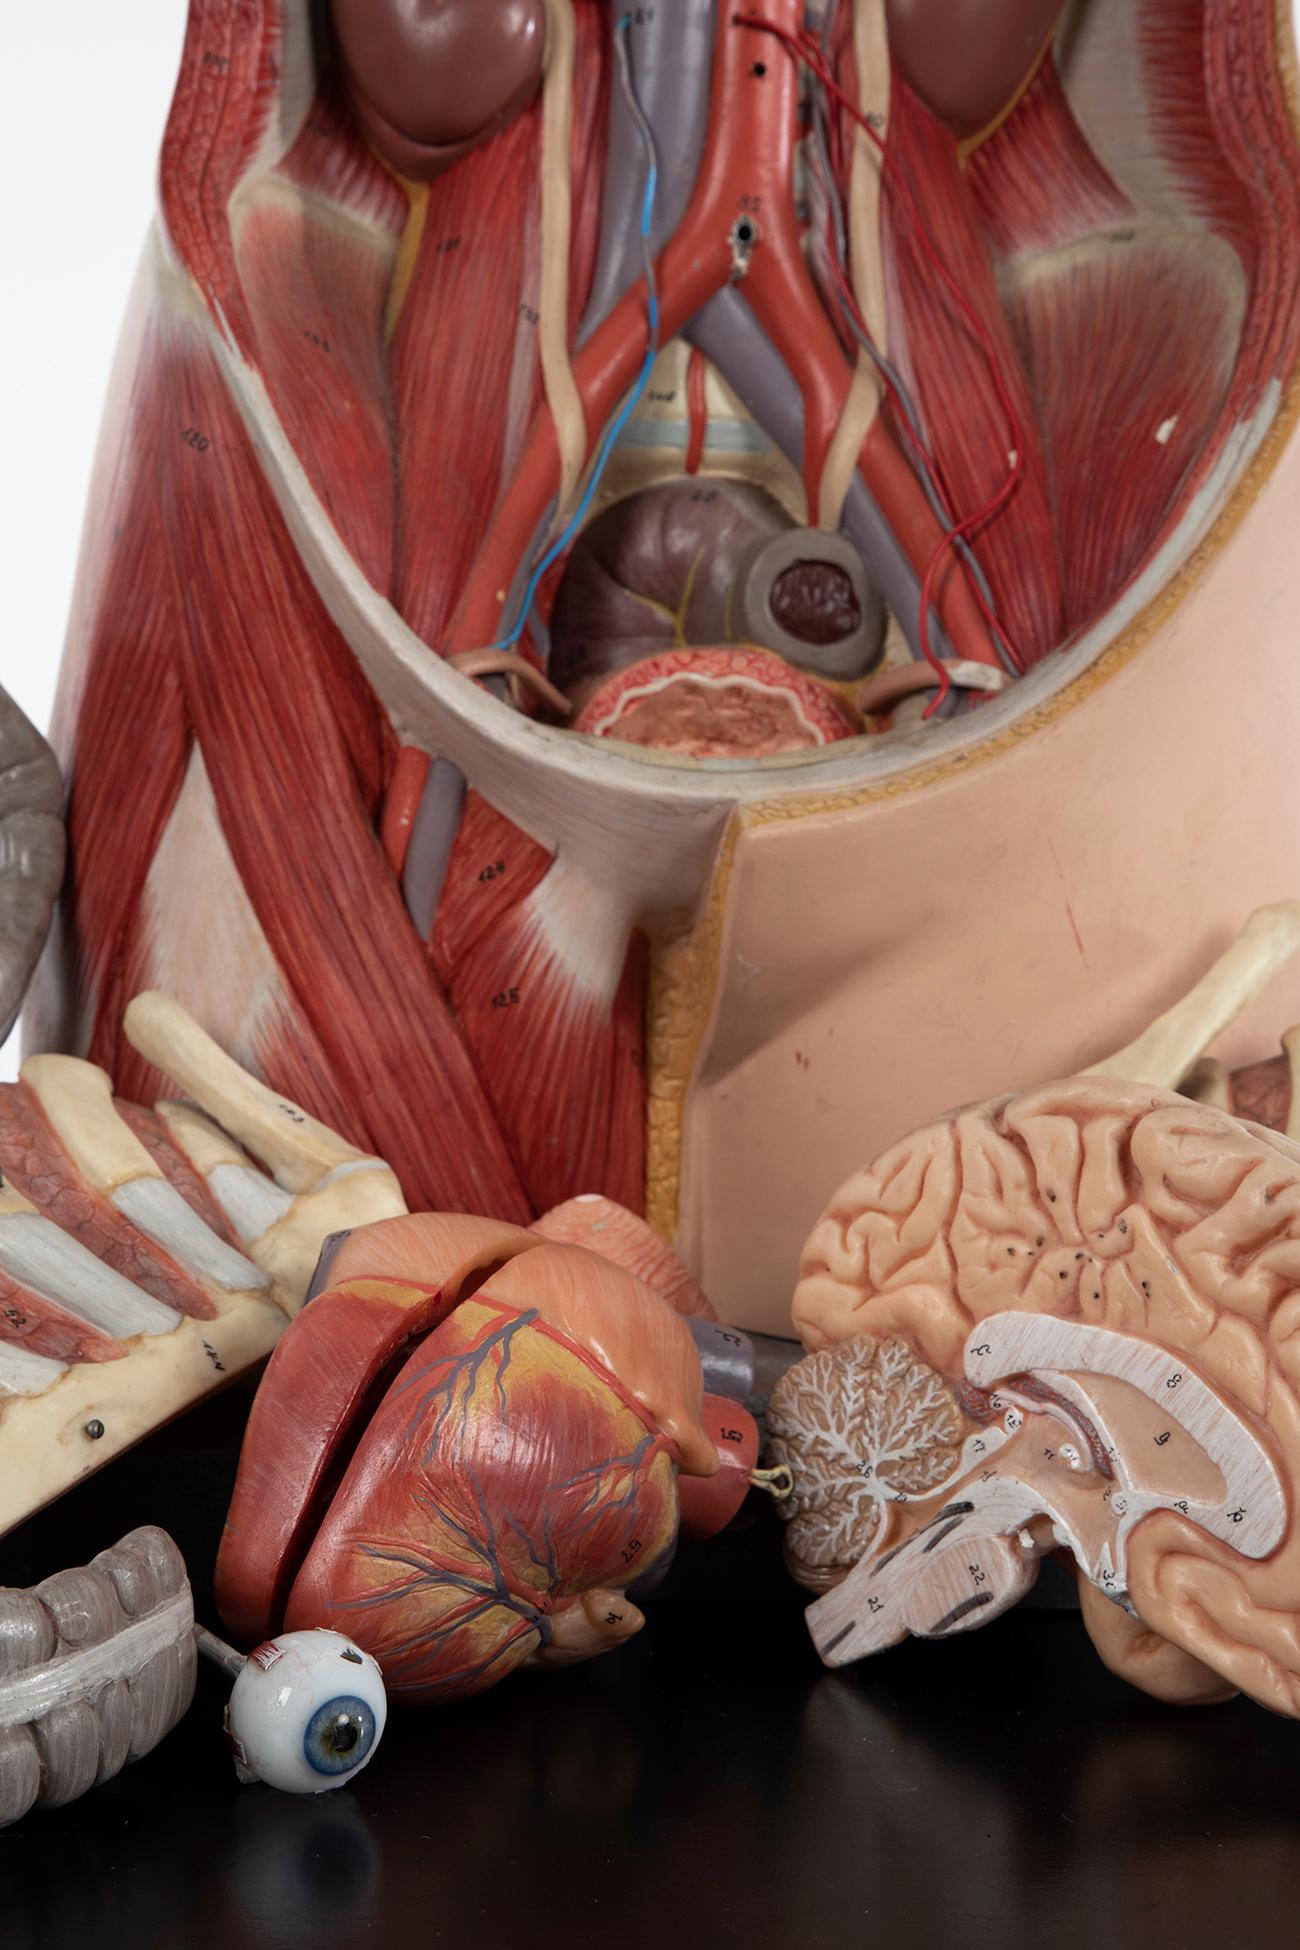 right side organs